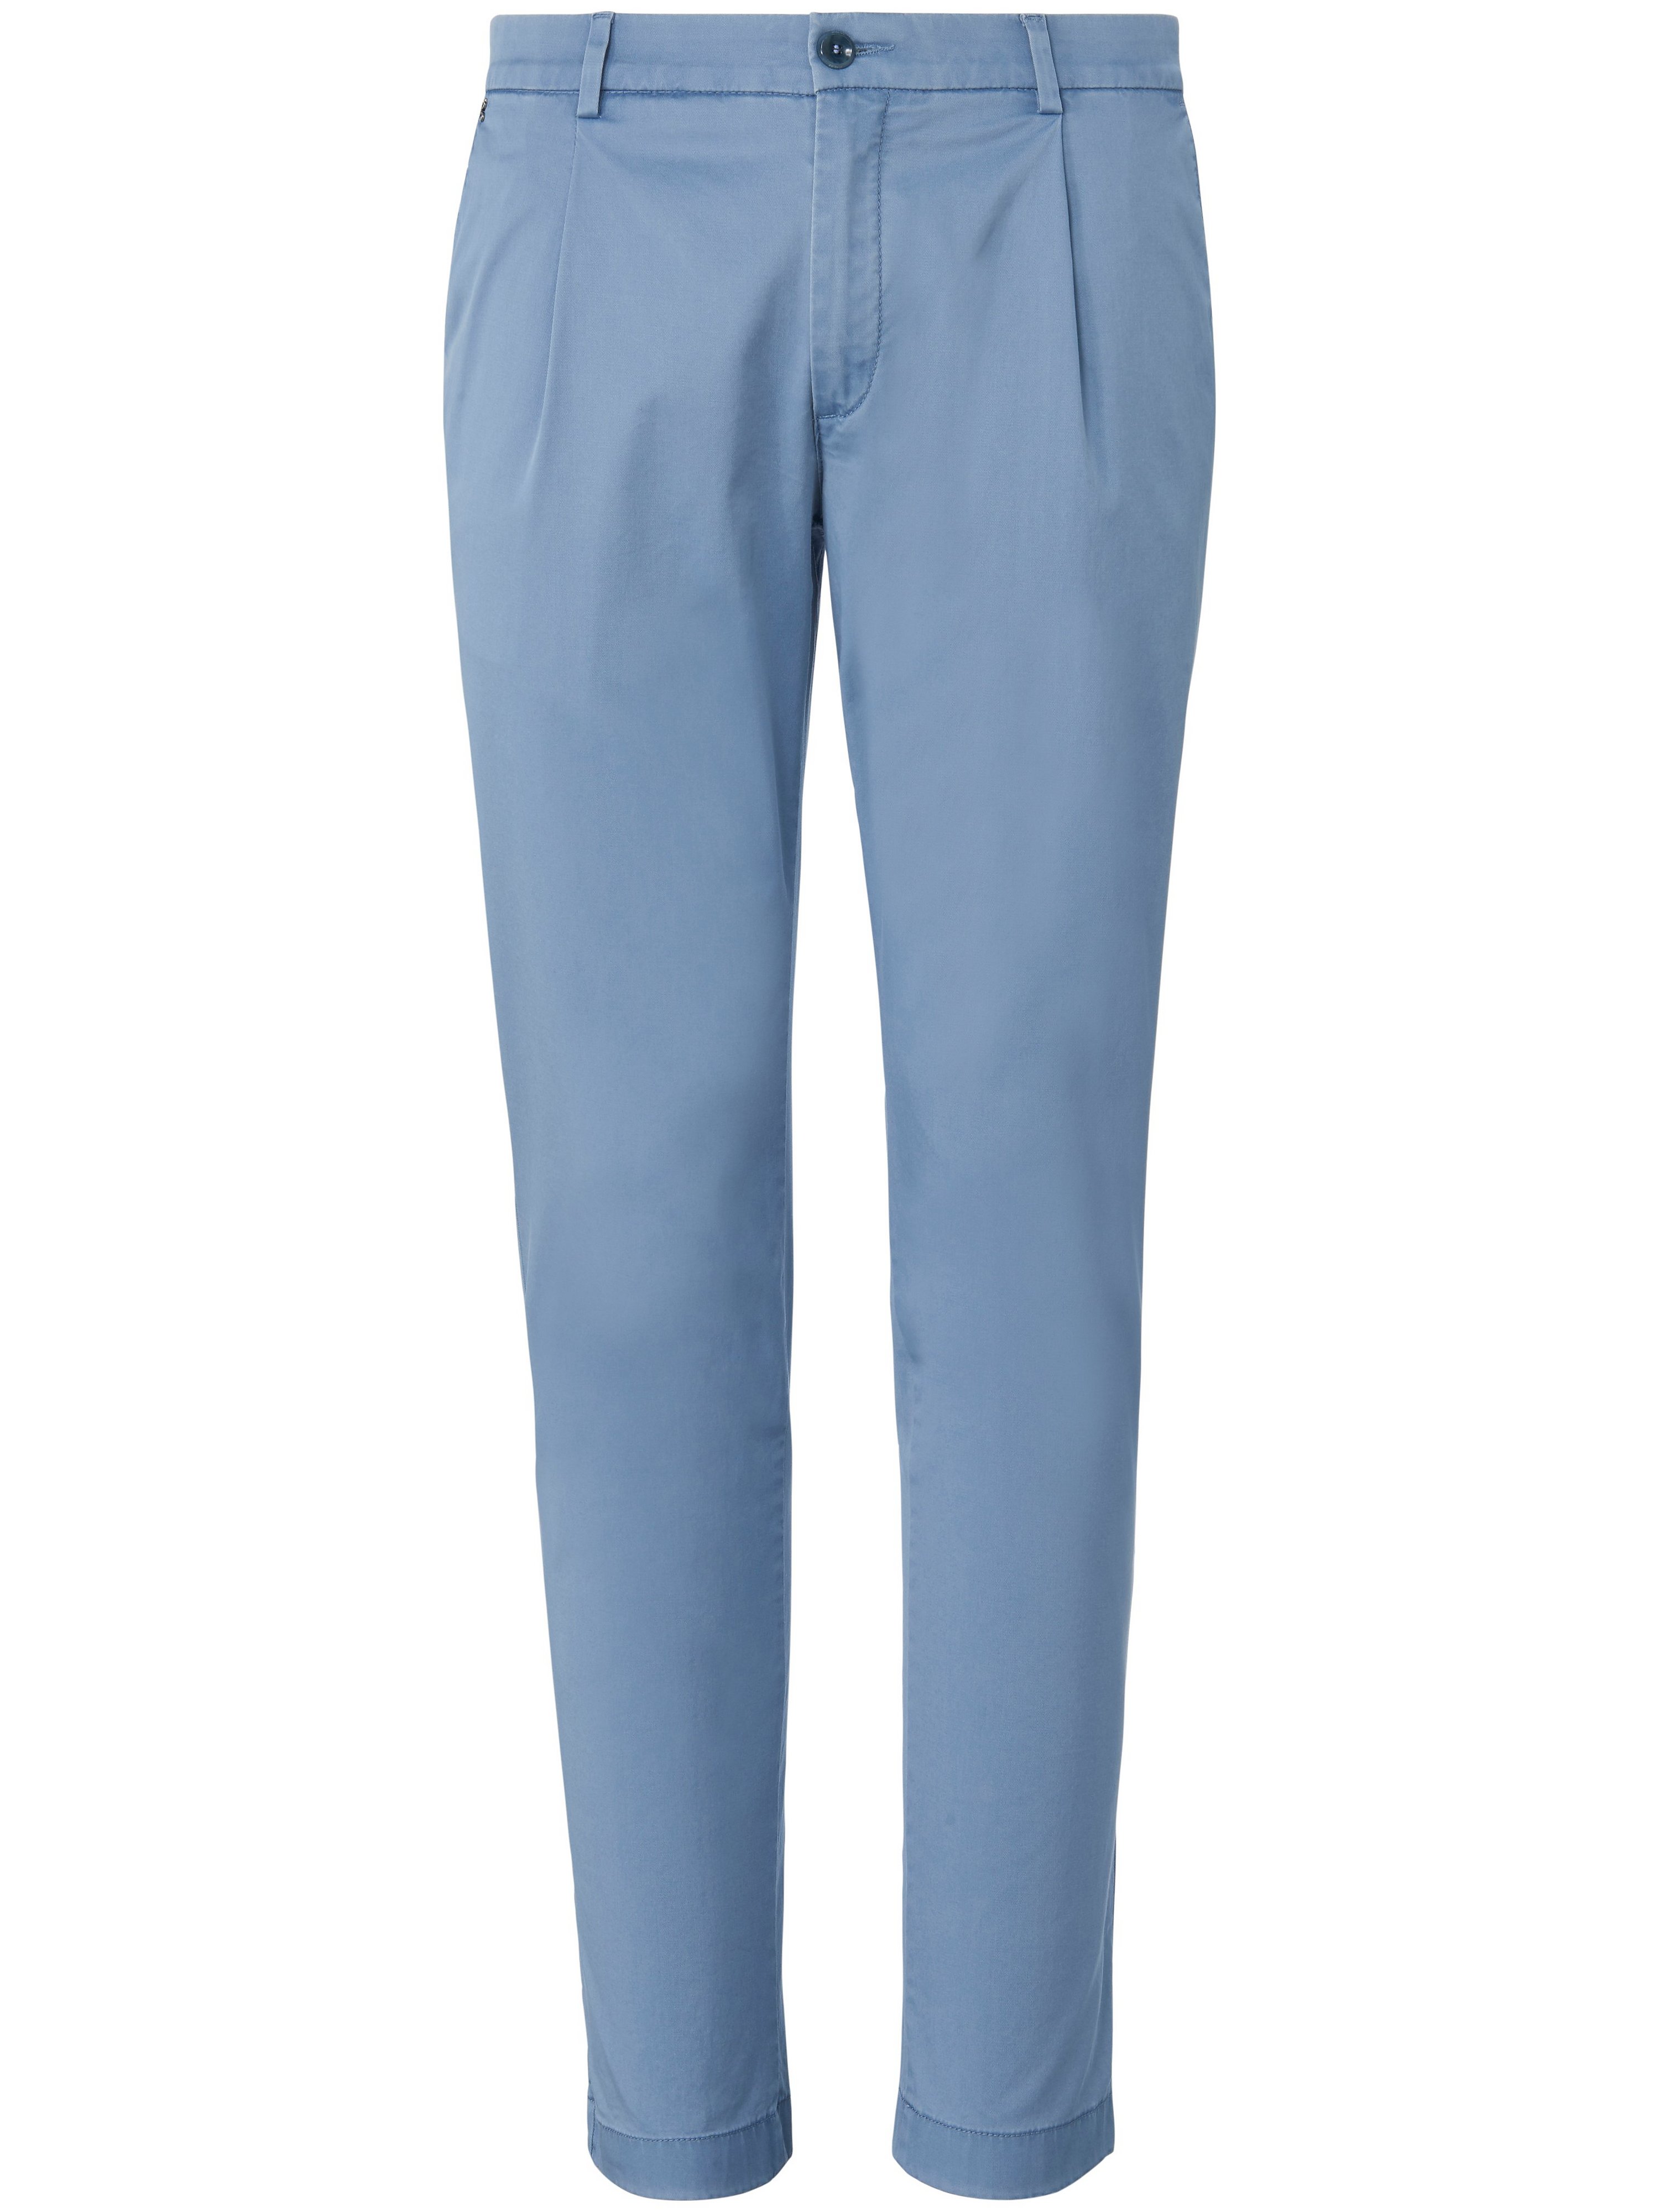 Le pantalon à pinces modèle Sergio  gardeur bleu taille 42